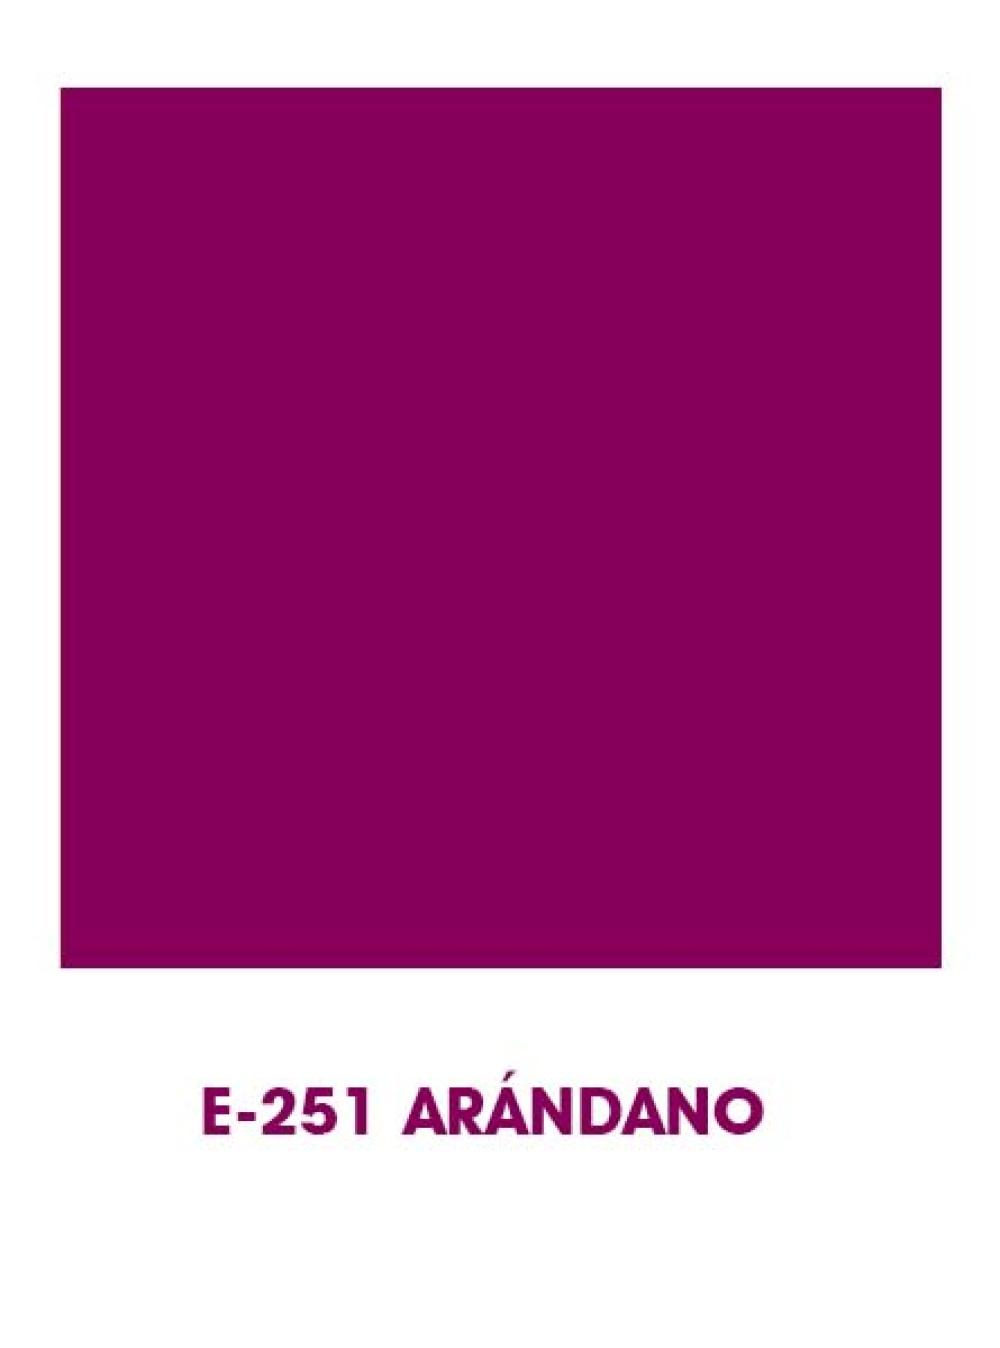 E251 Arándano